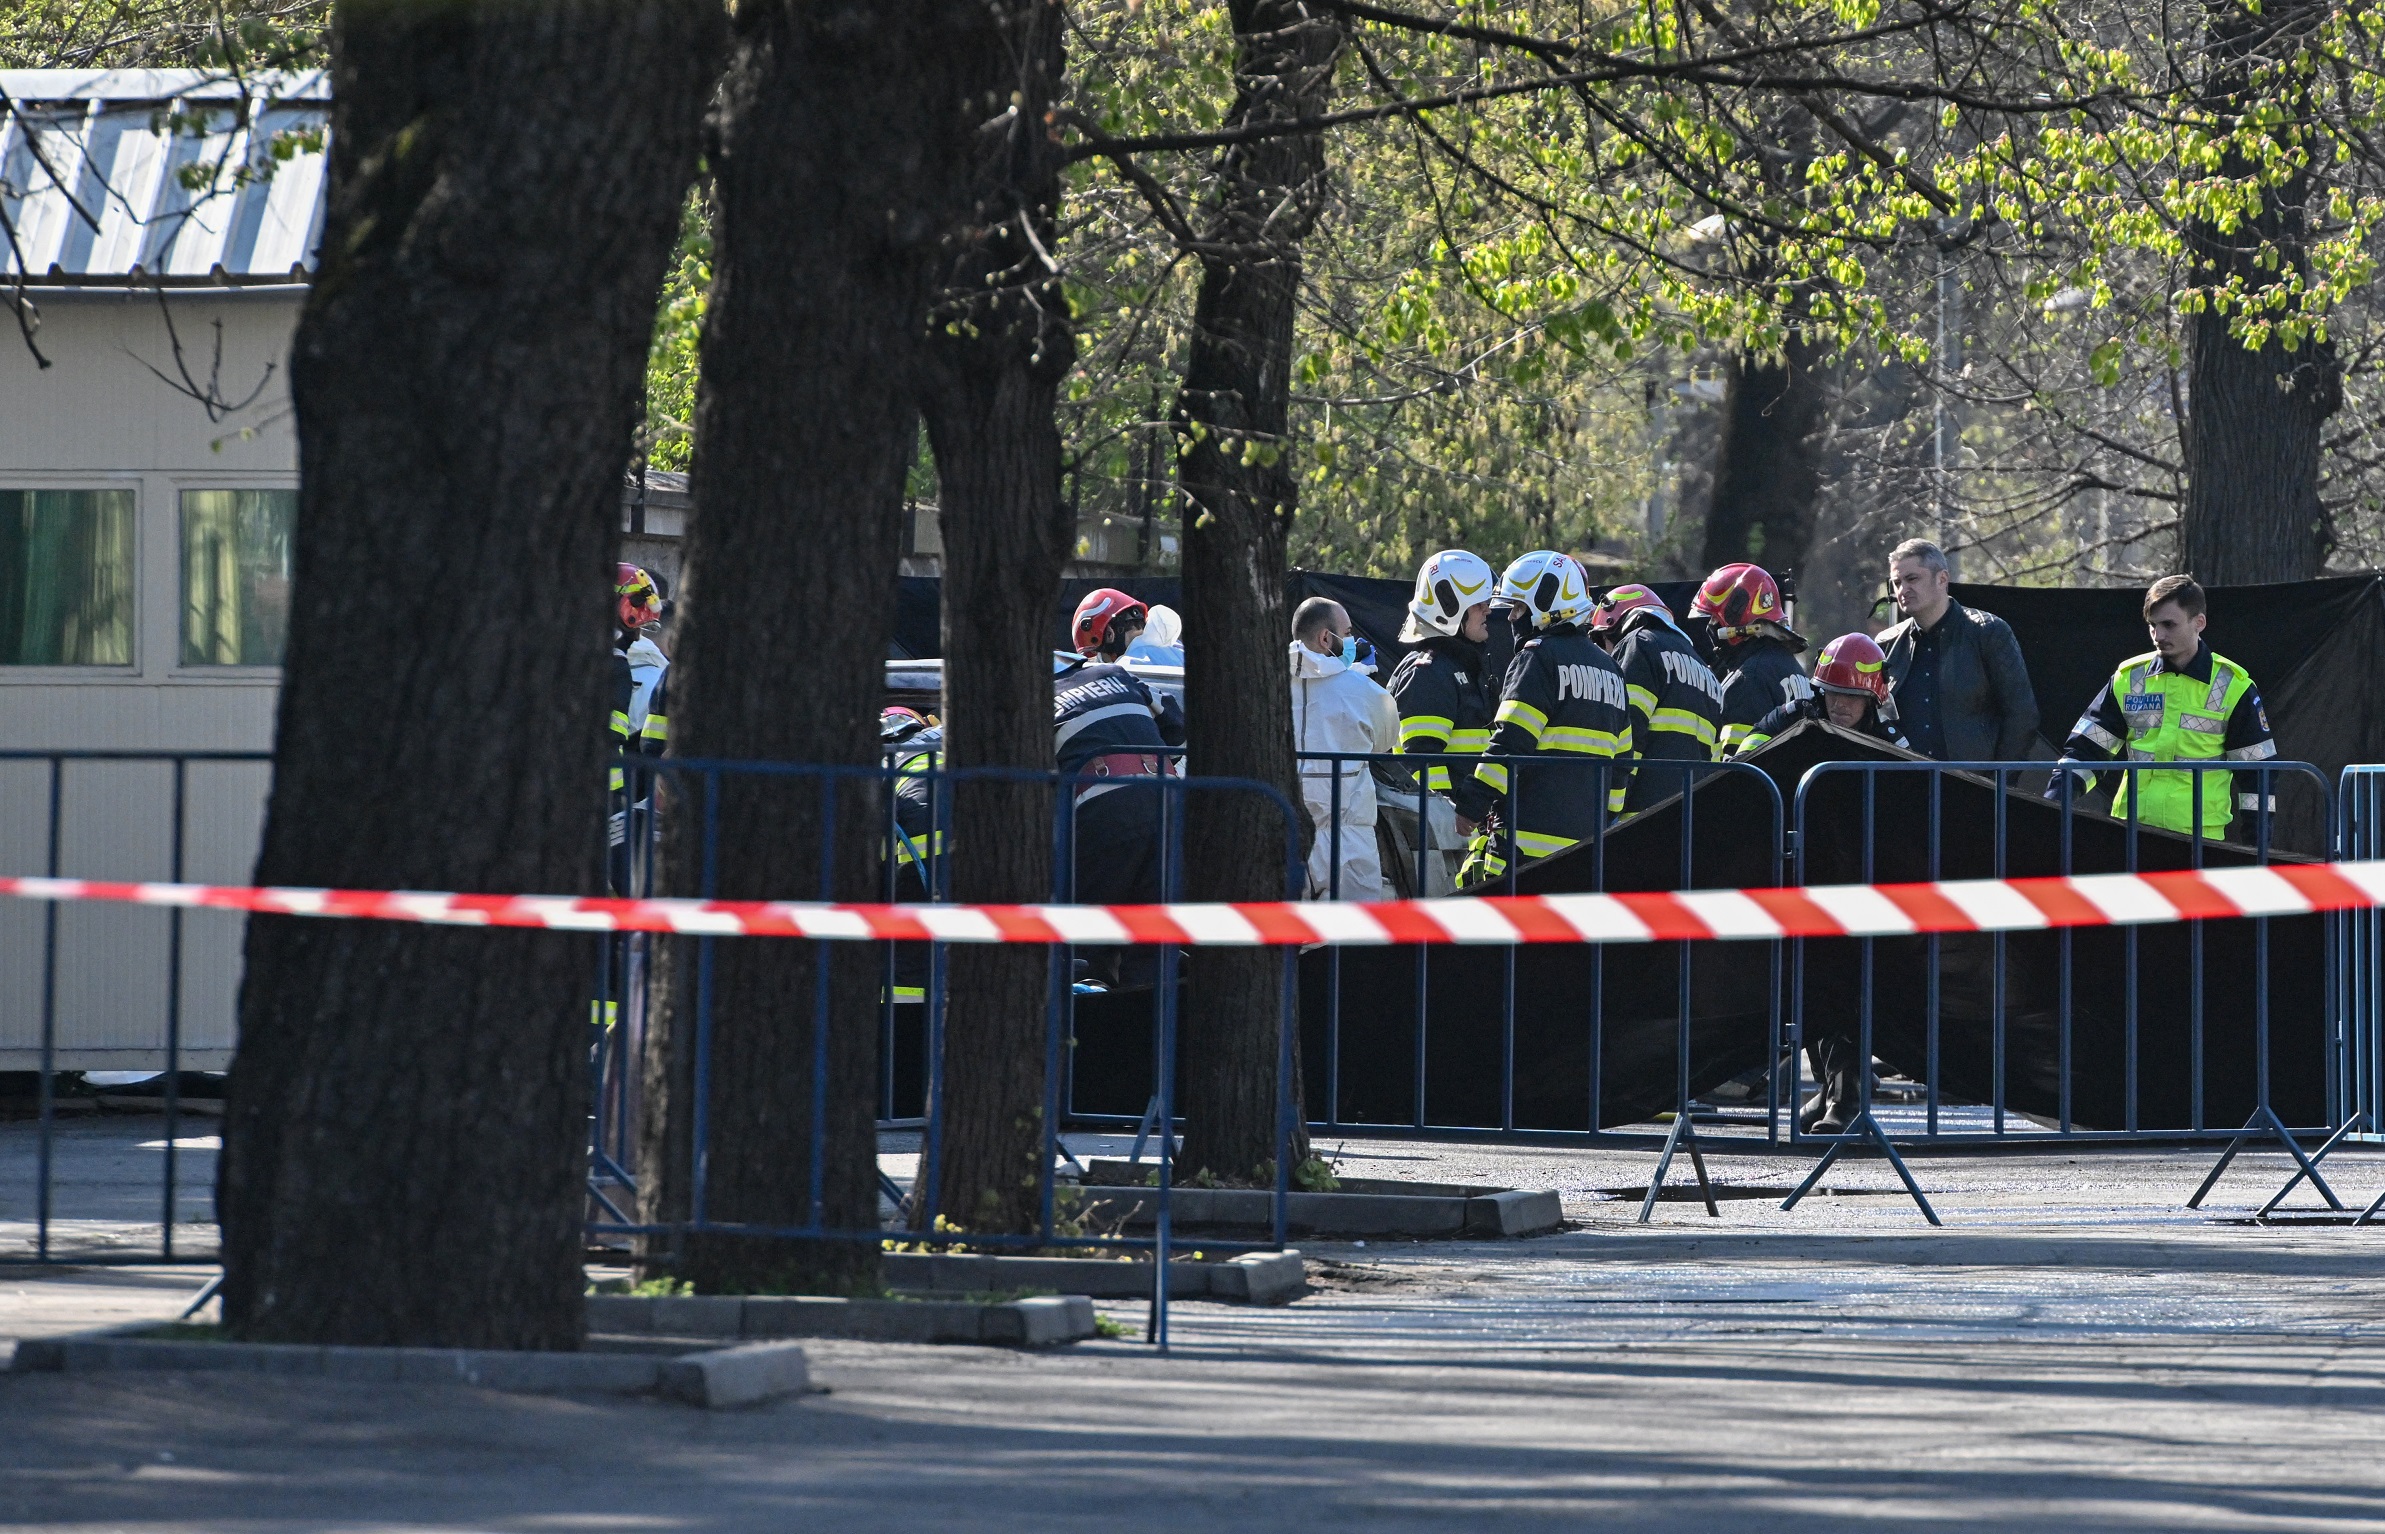 Magánéleti problémái voltak a férfinak, aki felgyújtotta magát és a bukaresti orosz nagykövetség kerítésének hajtott